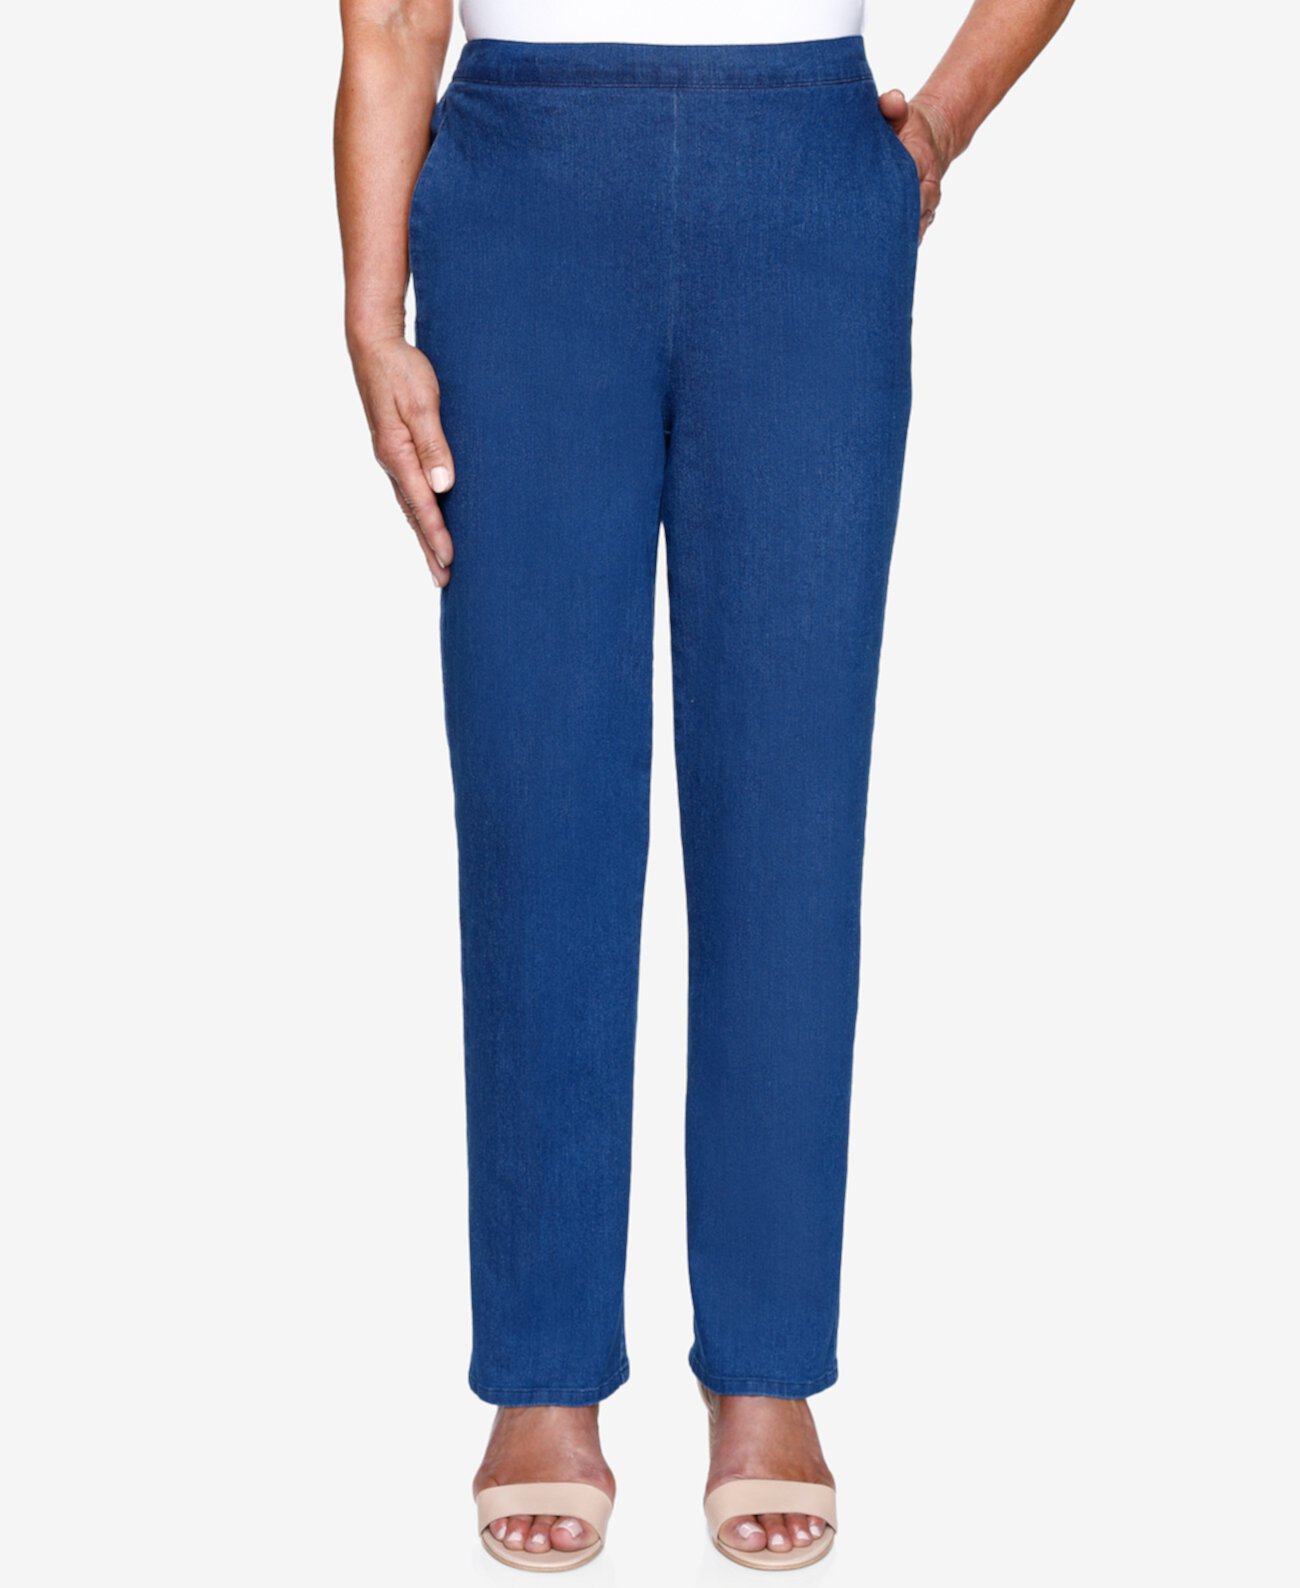 Пропорциональные джинсовые брюки среднего размера без застежки Petite Lazy Daisy Alfred Dunner